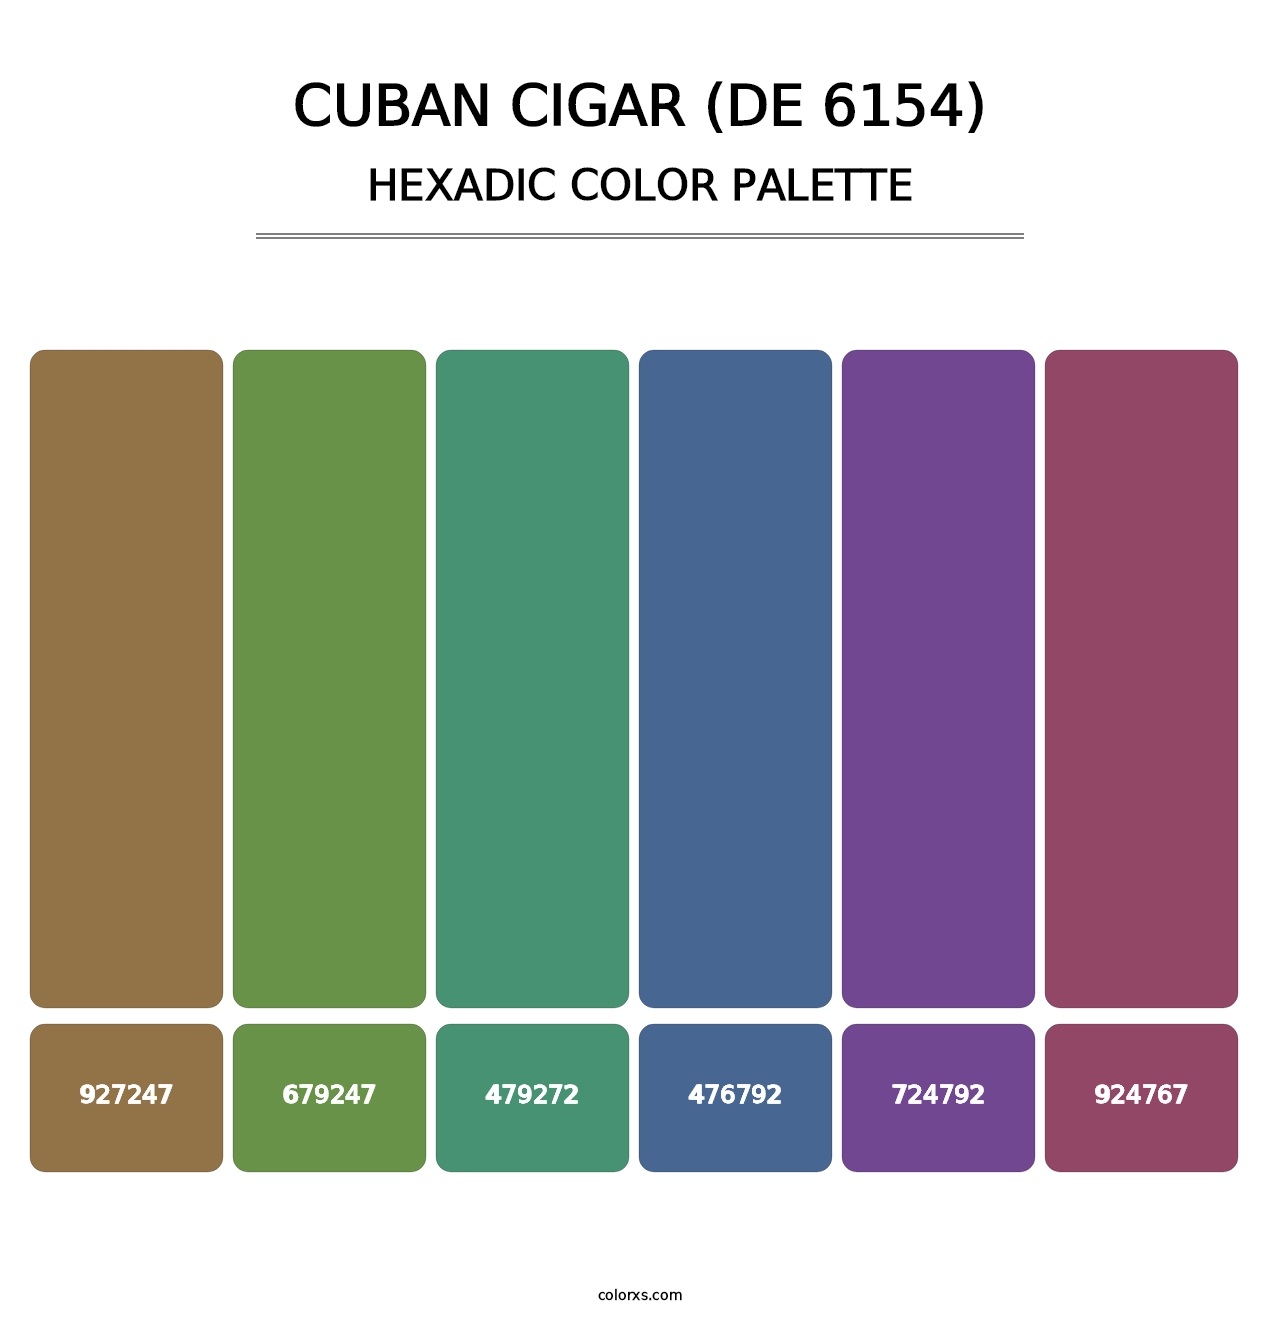 Cuban Cigar (DE 6154) - Hexadic Color Palette